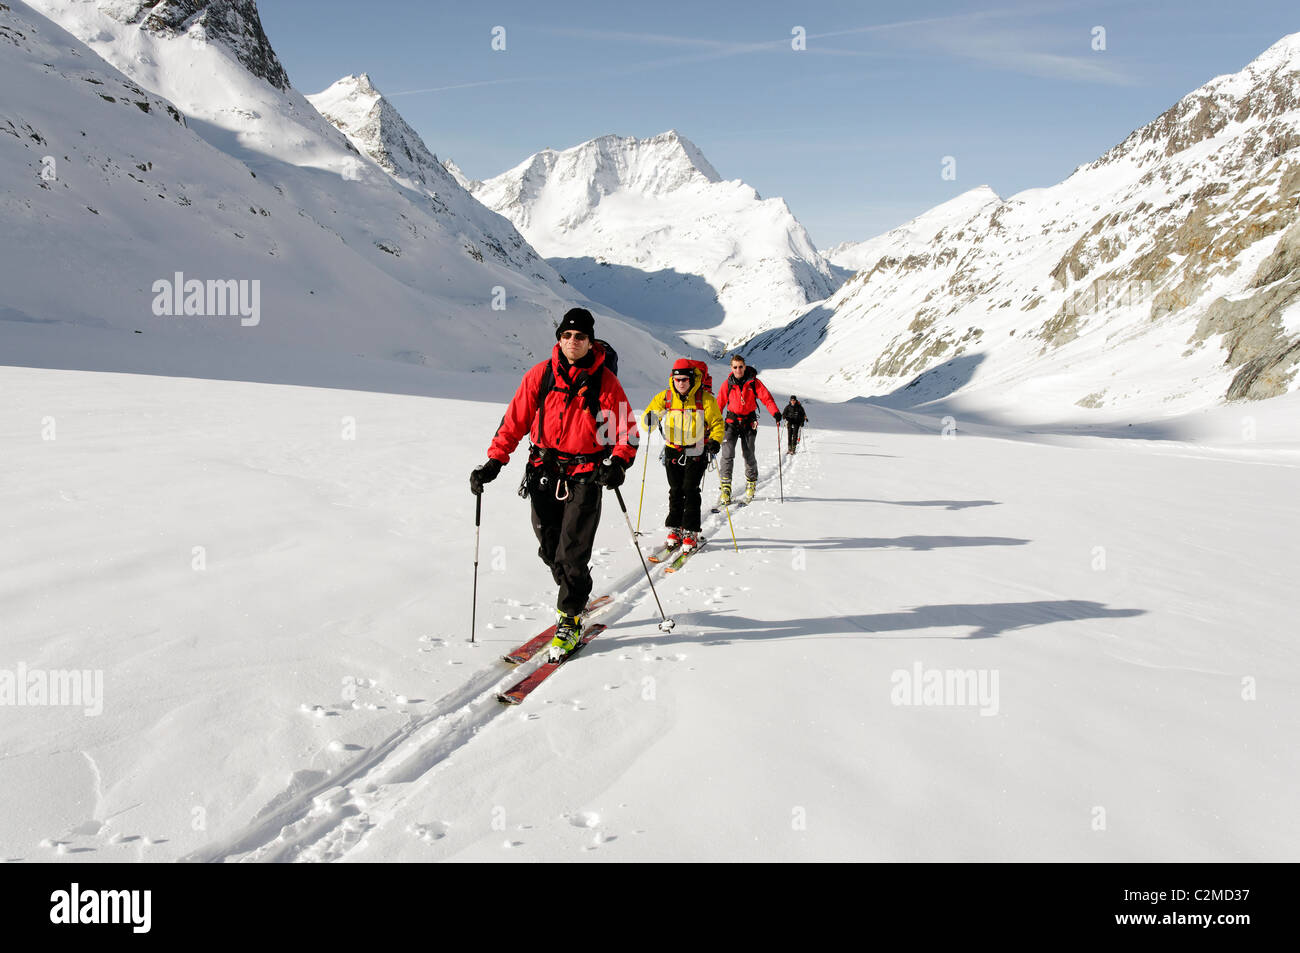 Skitouren am Otemma Gletscher auf der Haute Route, Schweiz Stockfotografie  - Alamy